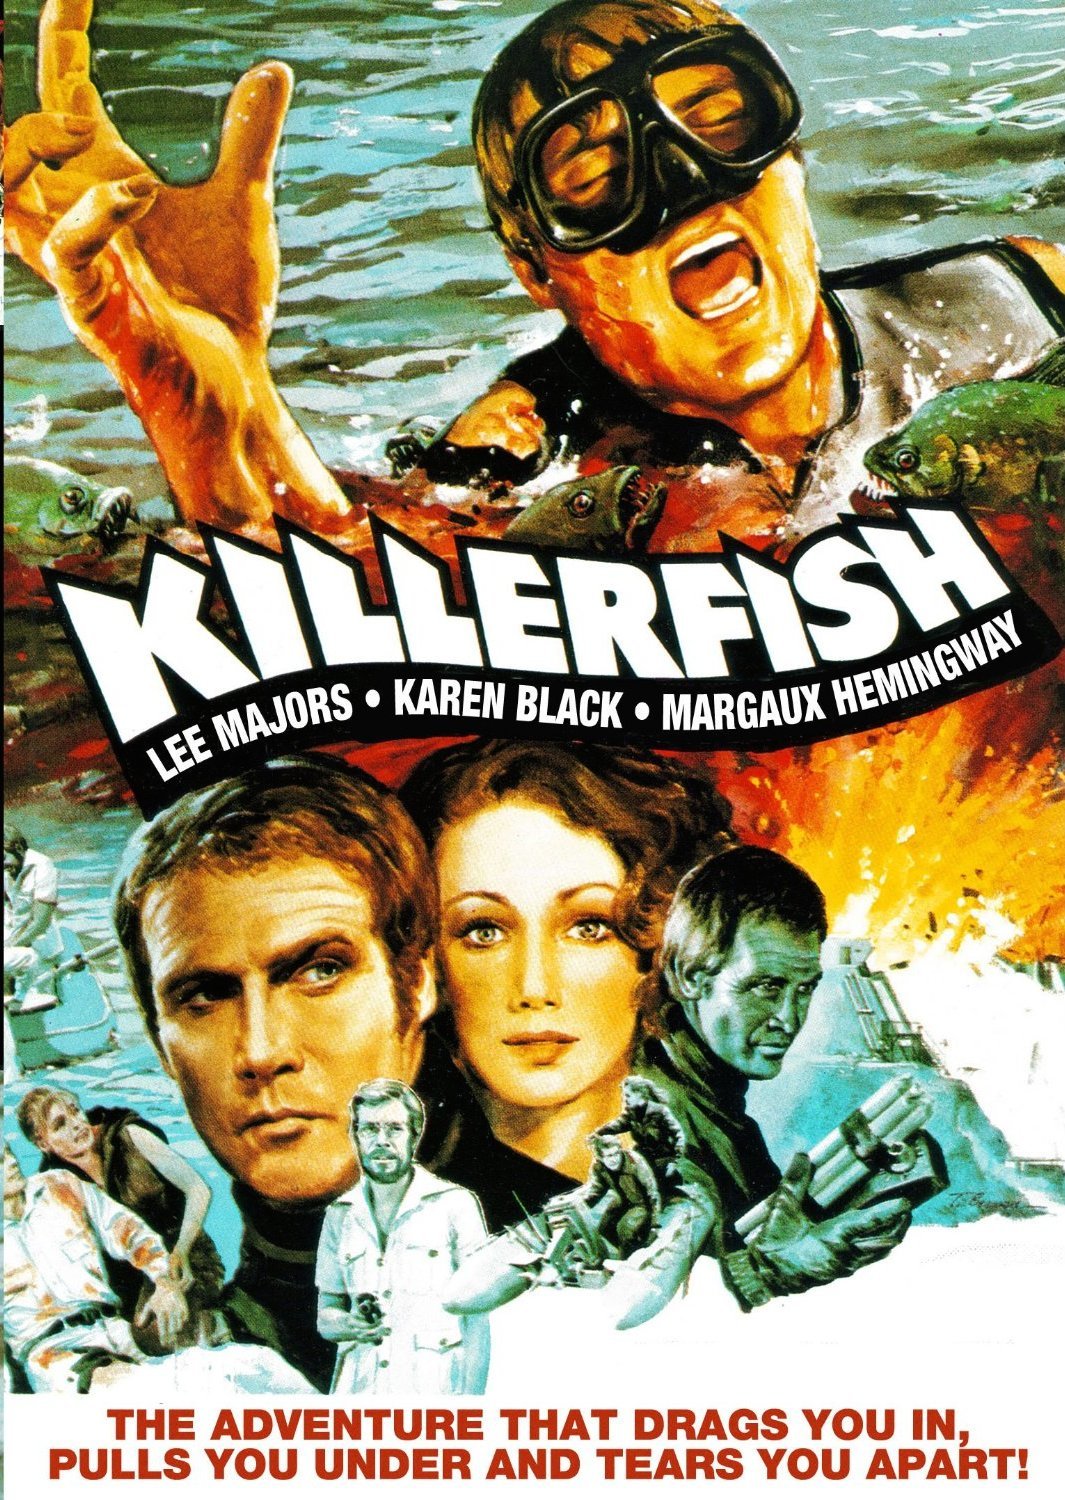 KILLER FISH BLU-RAY